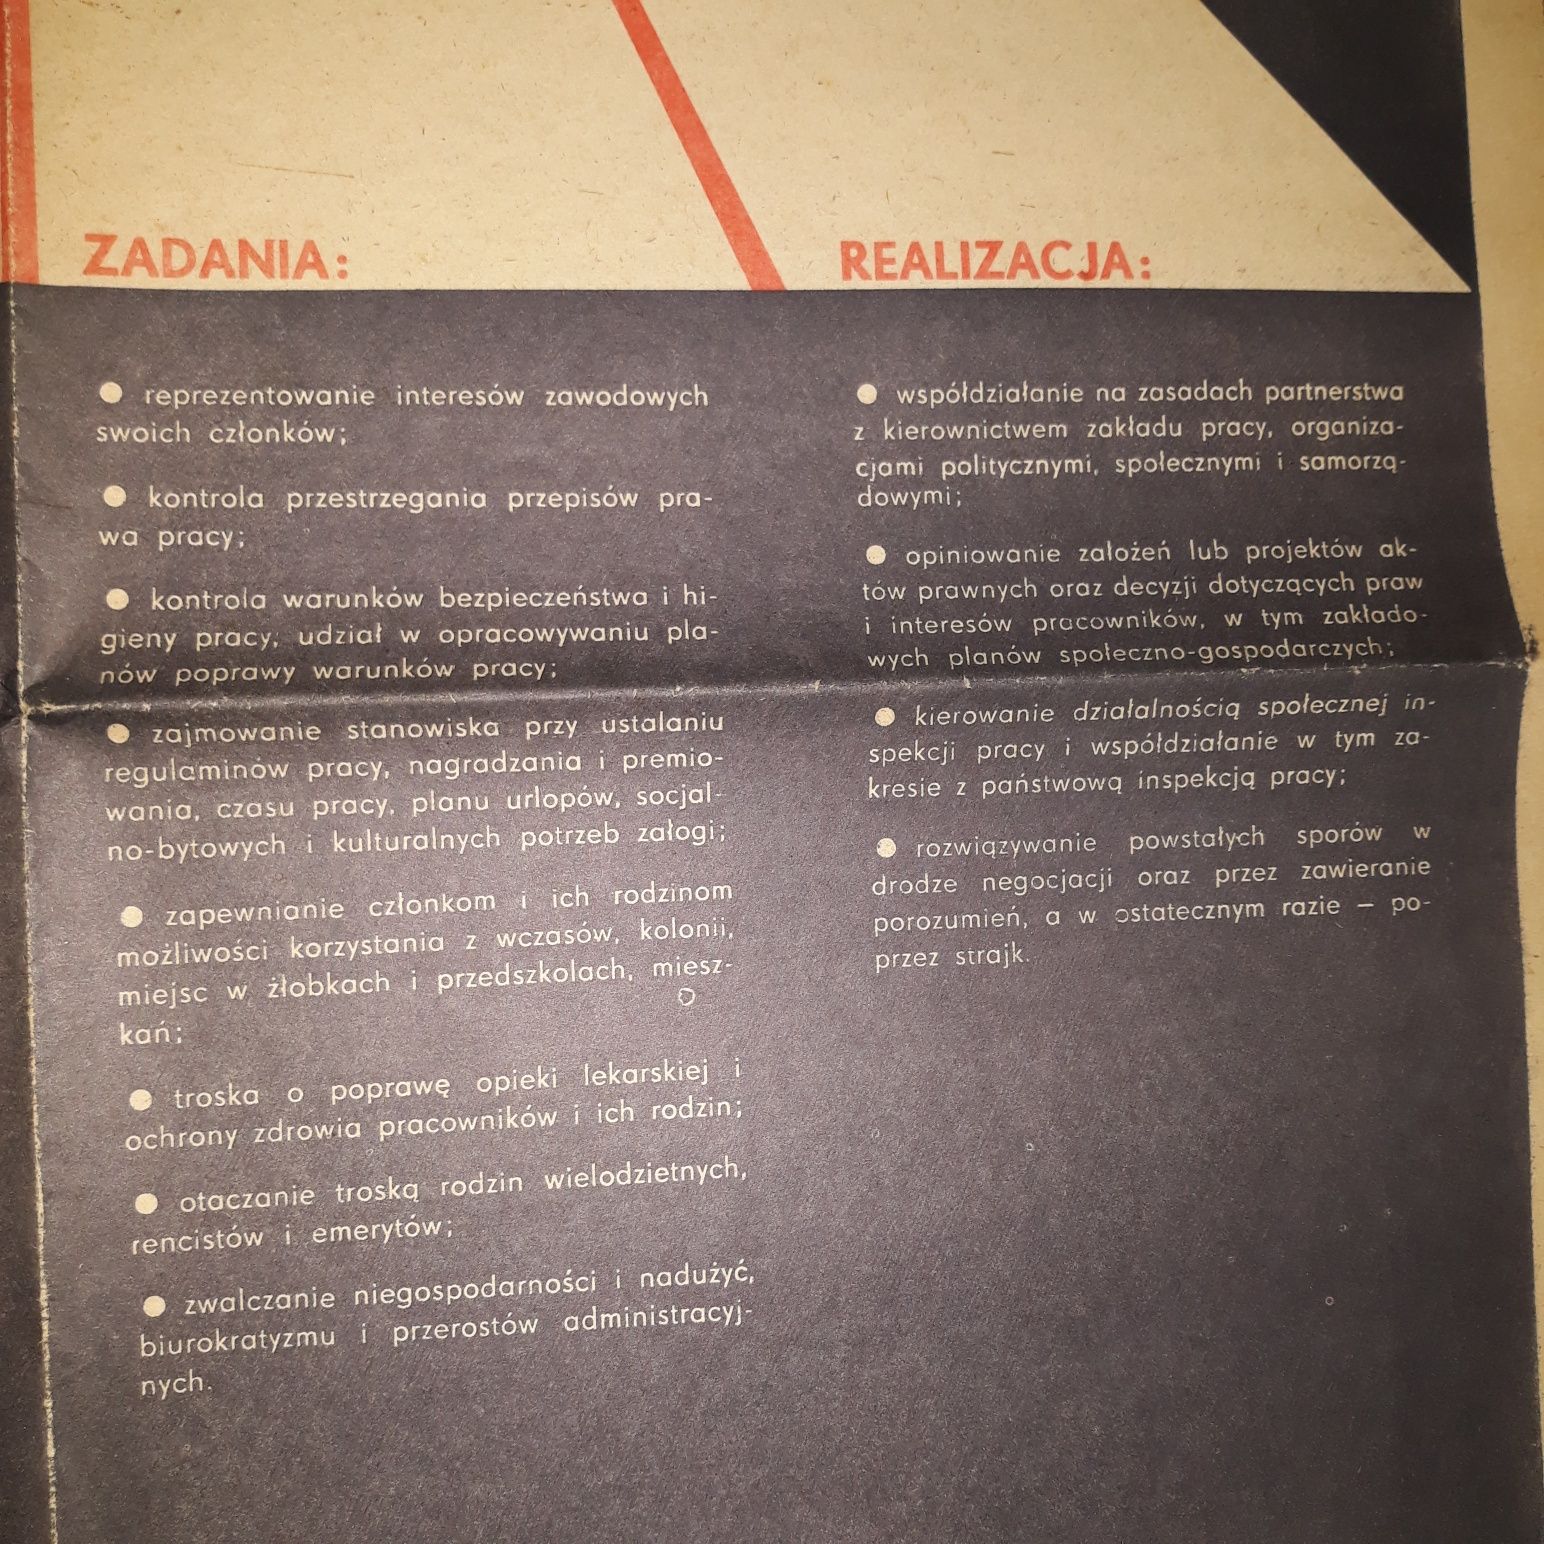 plakat Samorzadne Niezalezne Robotnicze, 1982, Gazeta Plakatowa